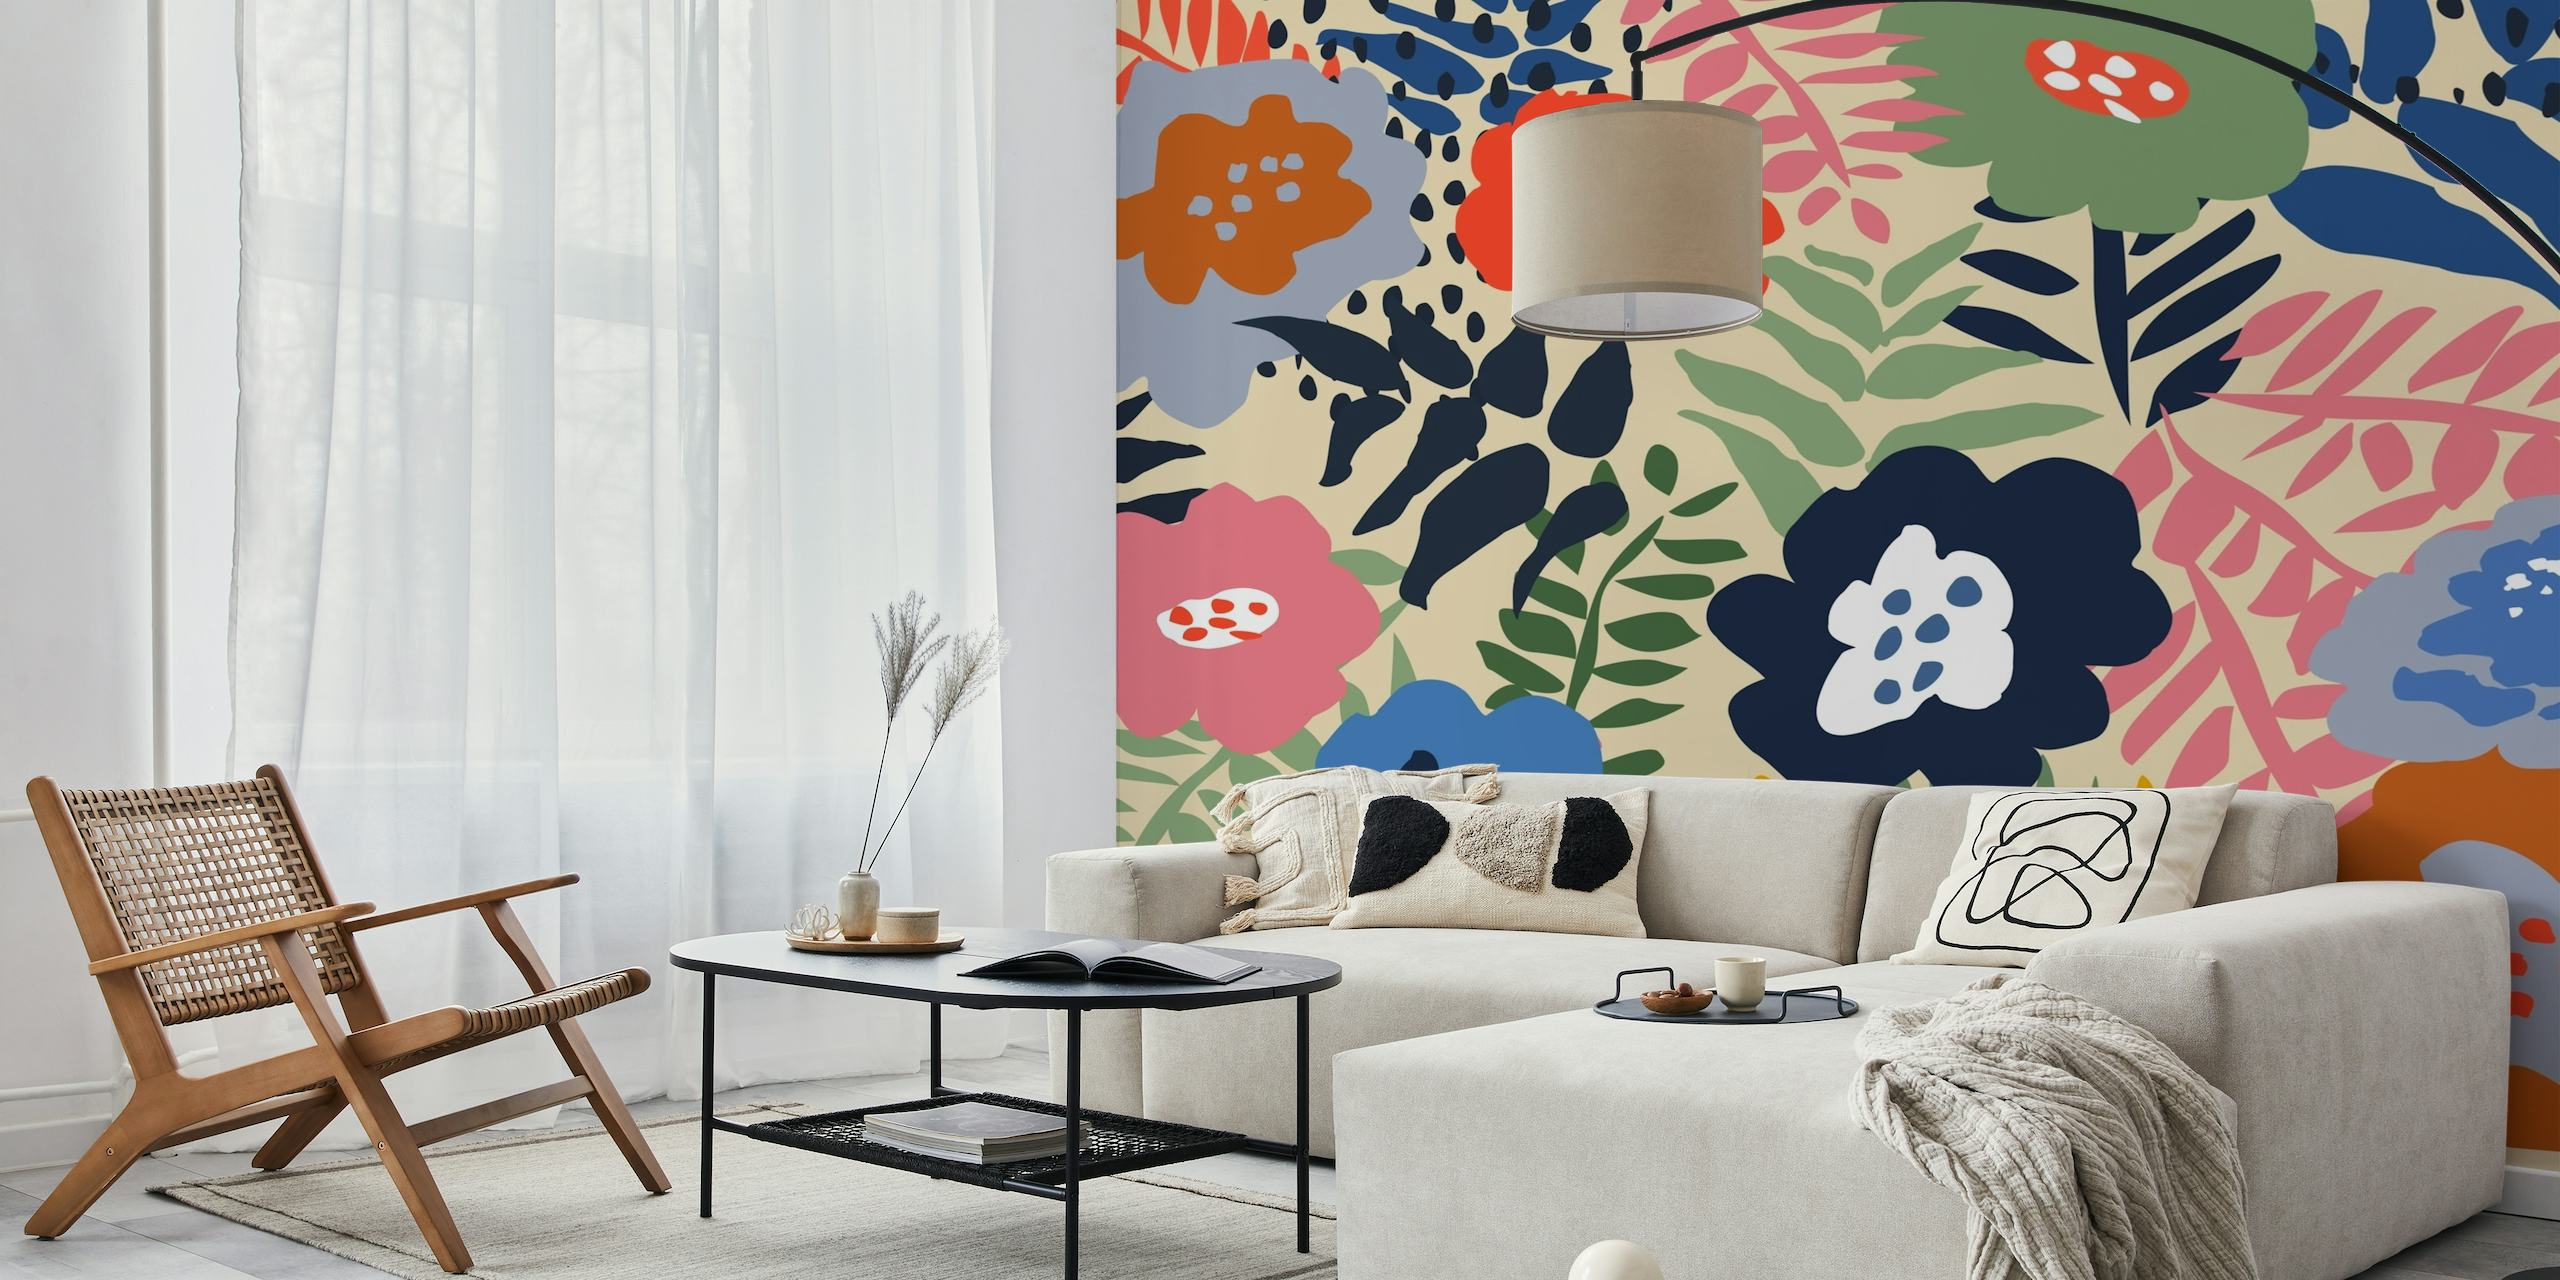 Fotomural vinílico de parede colorido maximalista com padrão floral e desenhos de flores mistas